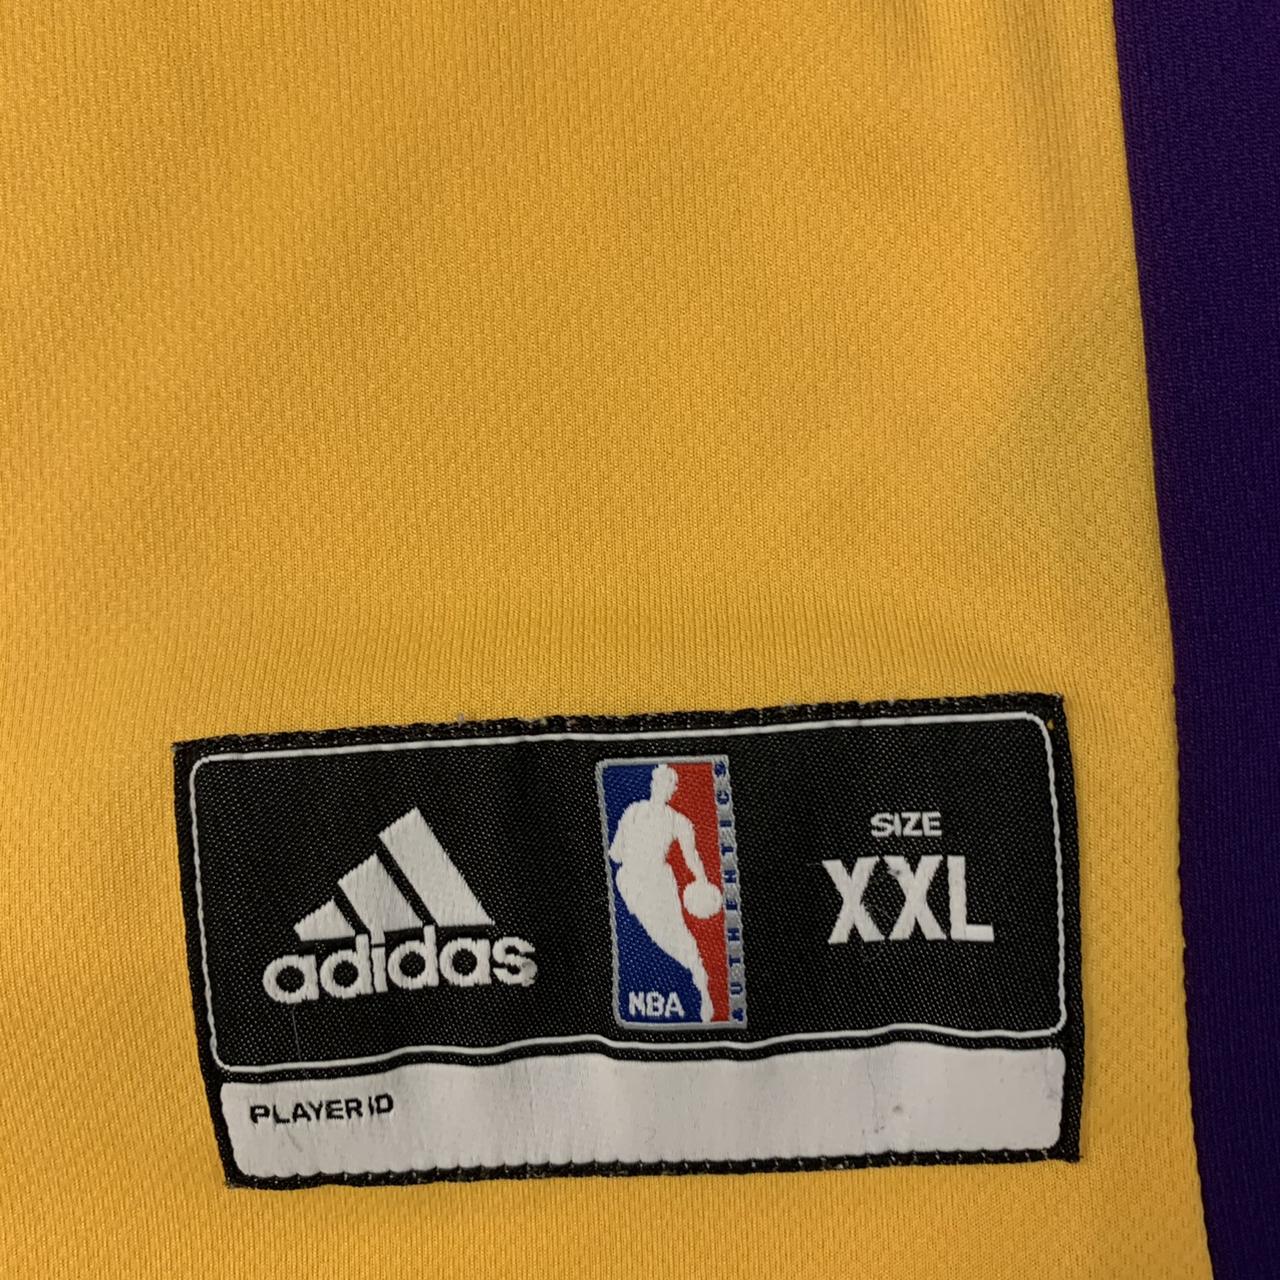 Los Angeles Lakers “Kobe Bryant” #24 Adidas Jersey - Depop